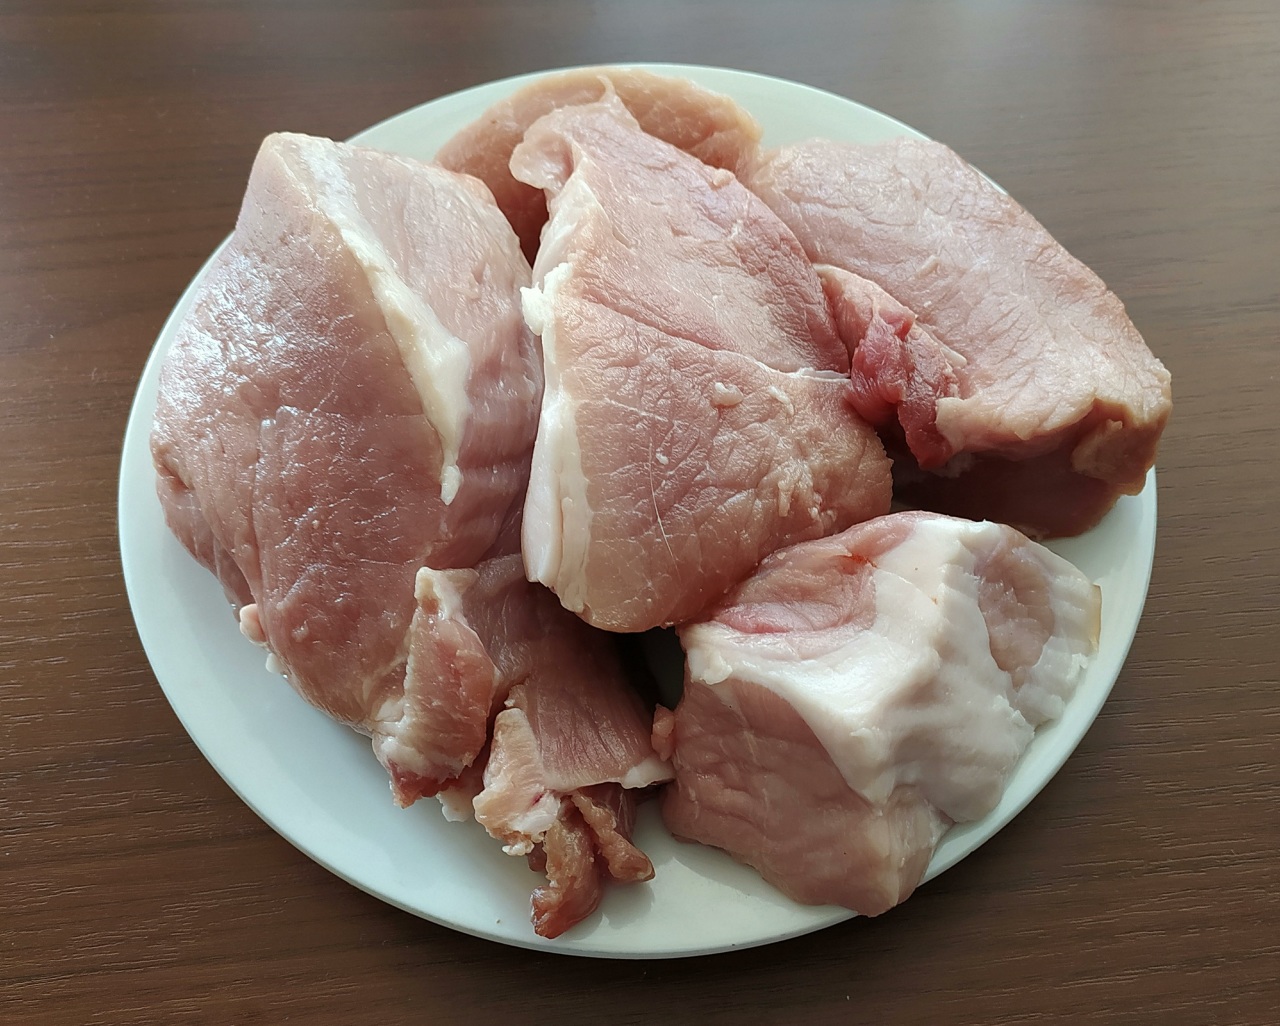 Опасную свинину с кишечной палочкой обнаружили в Нижегородской области